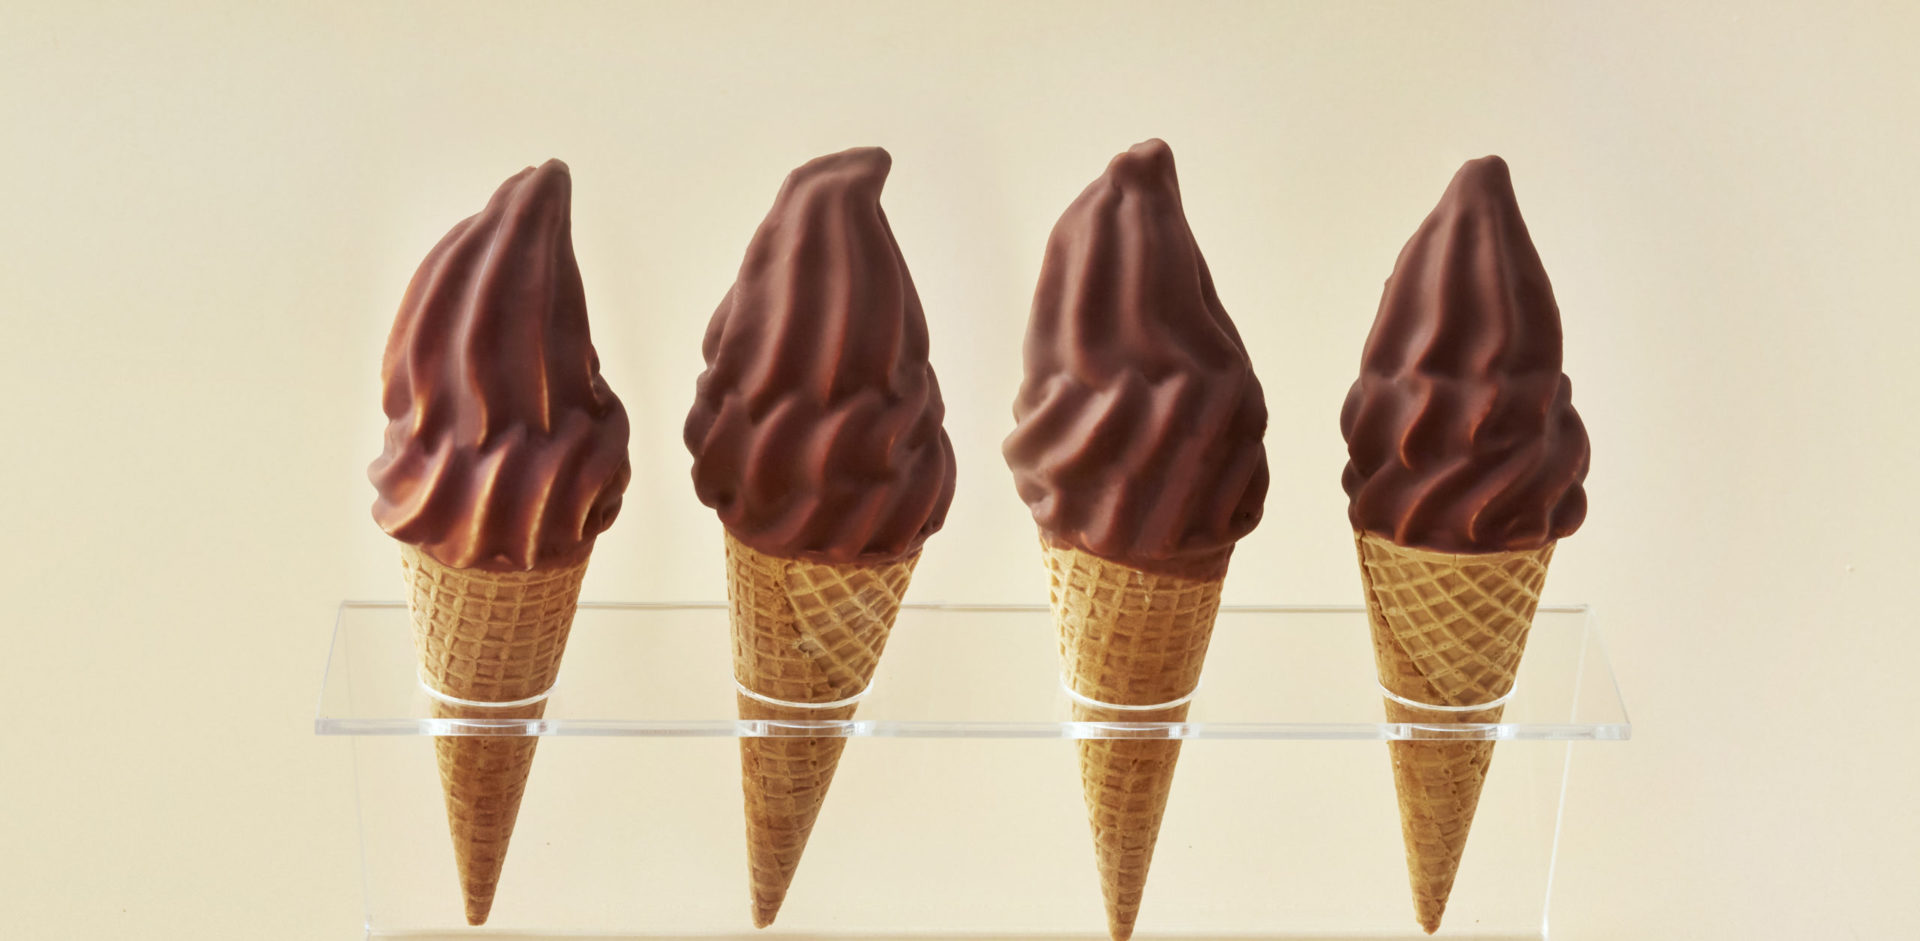 Four chocolate soft-serve ice cream cones.